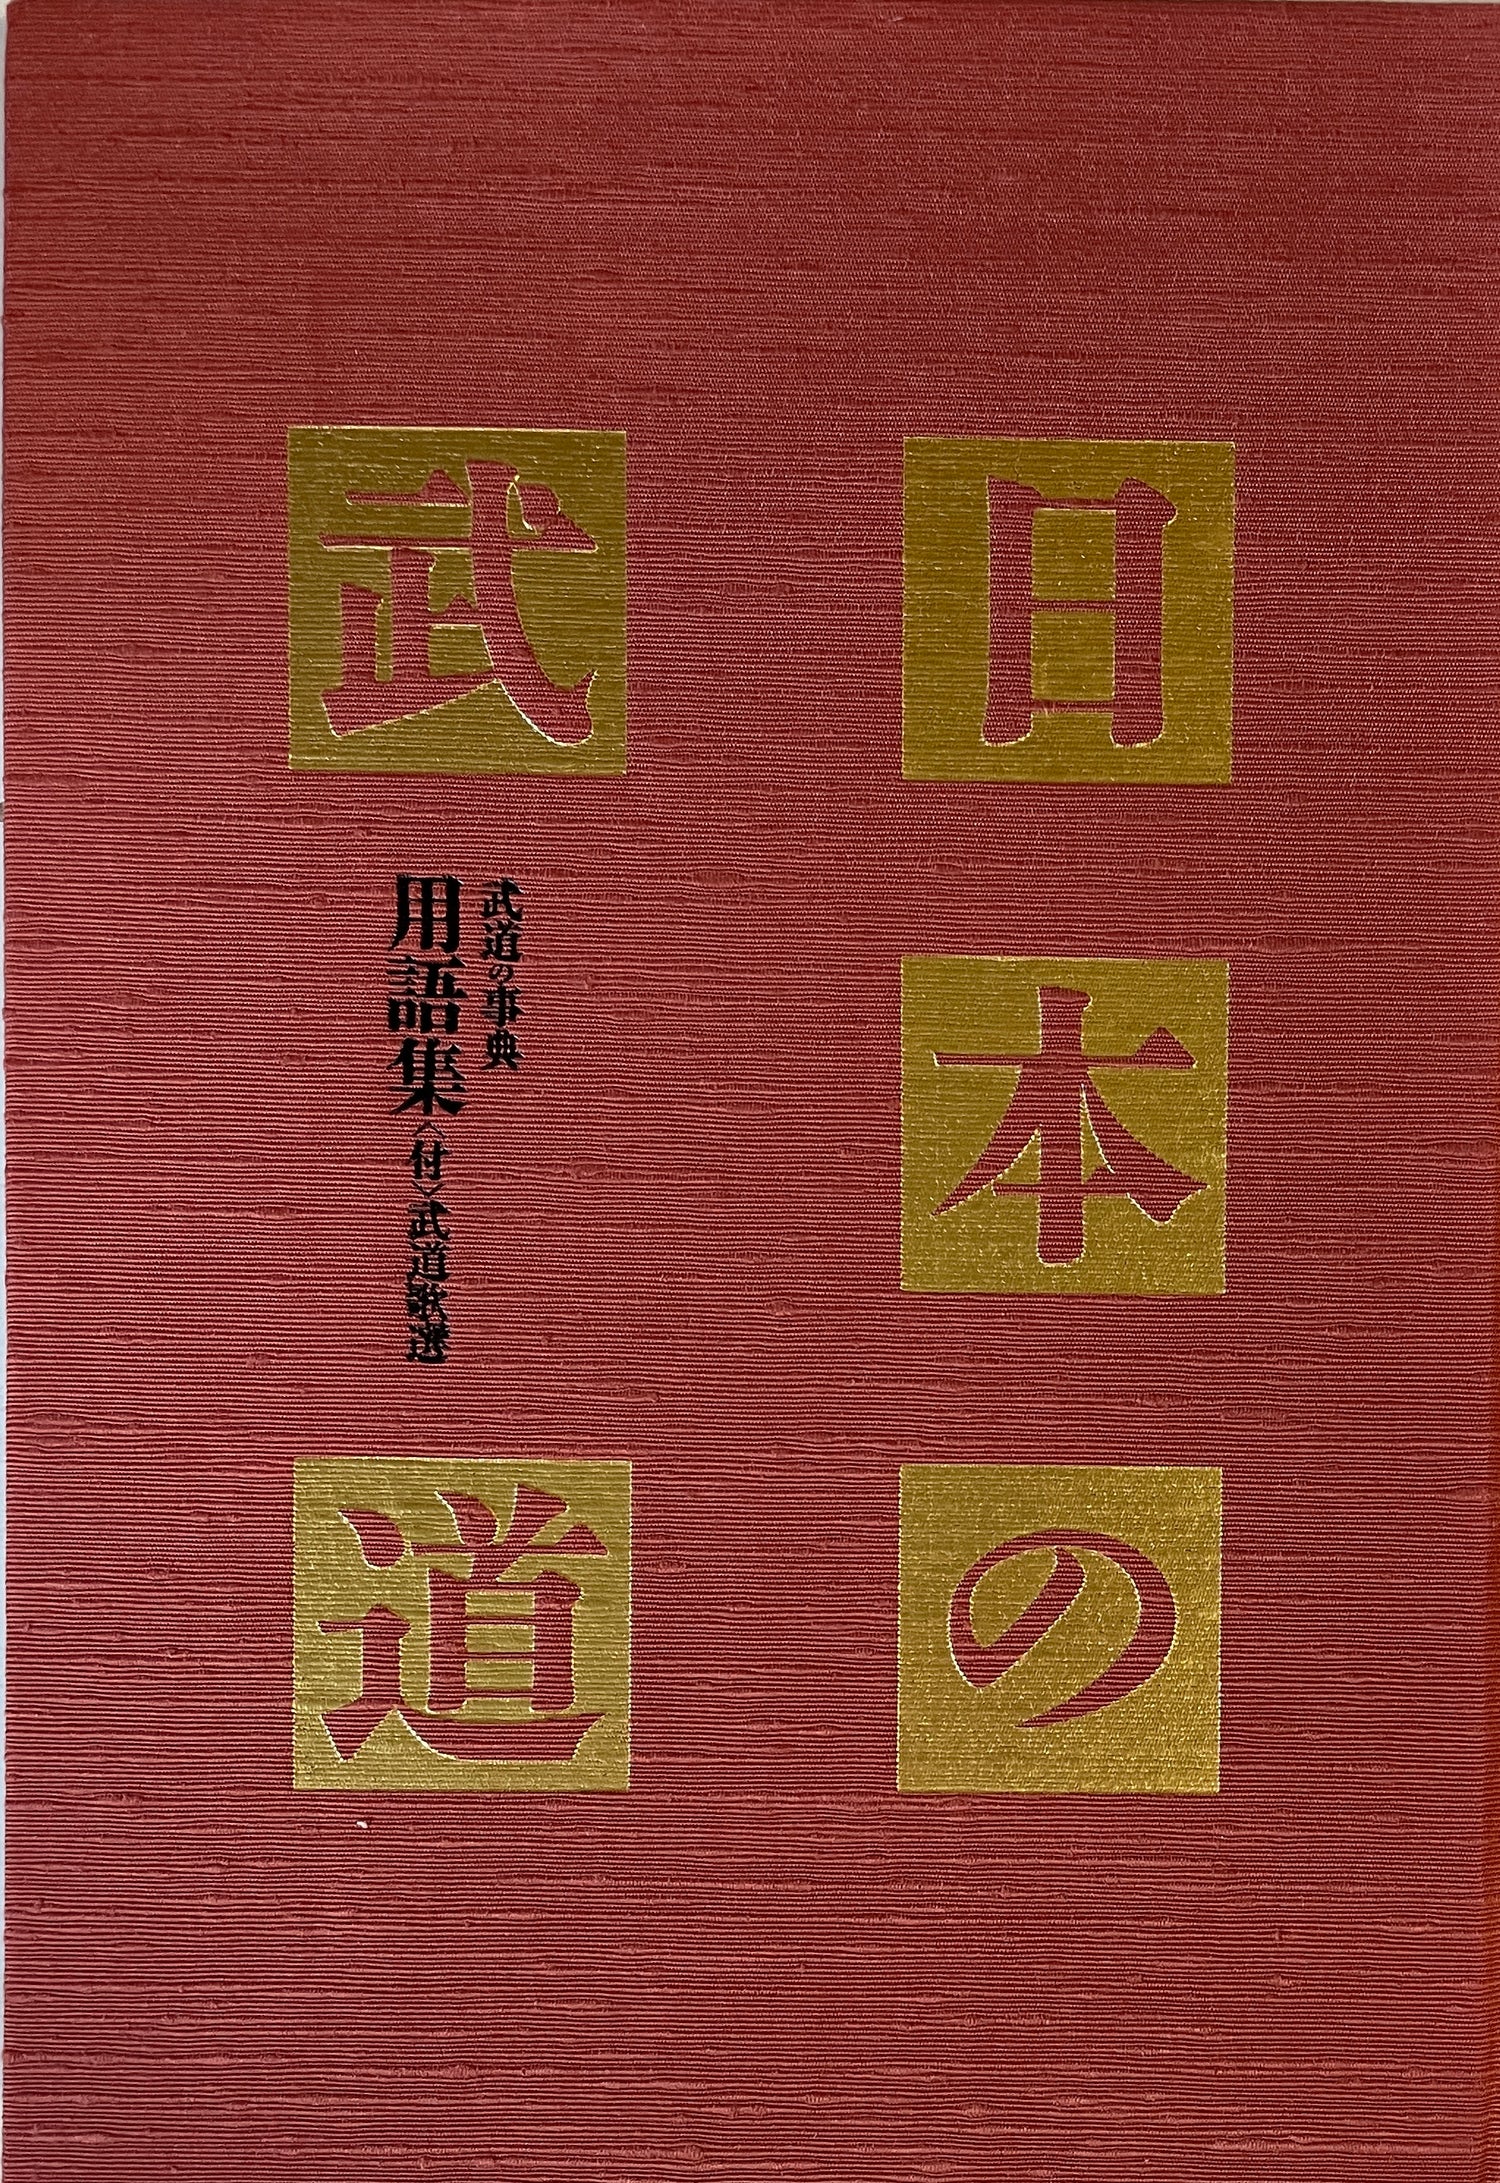 日本の武道 Book 15: 養護集 (中古) 